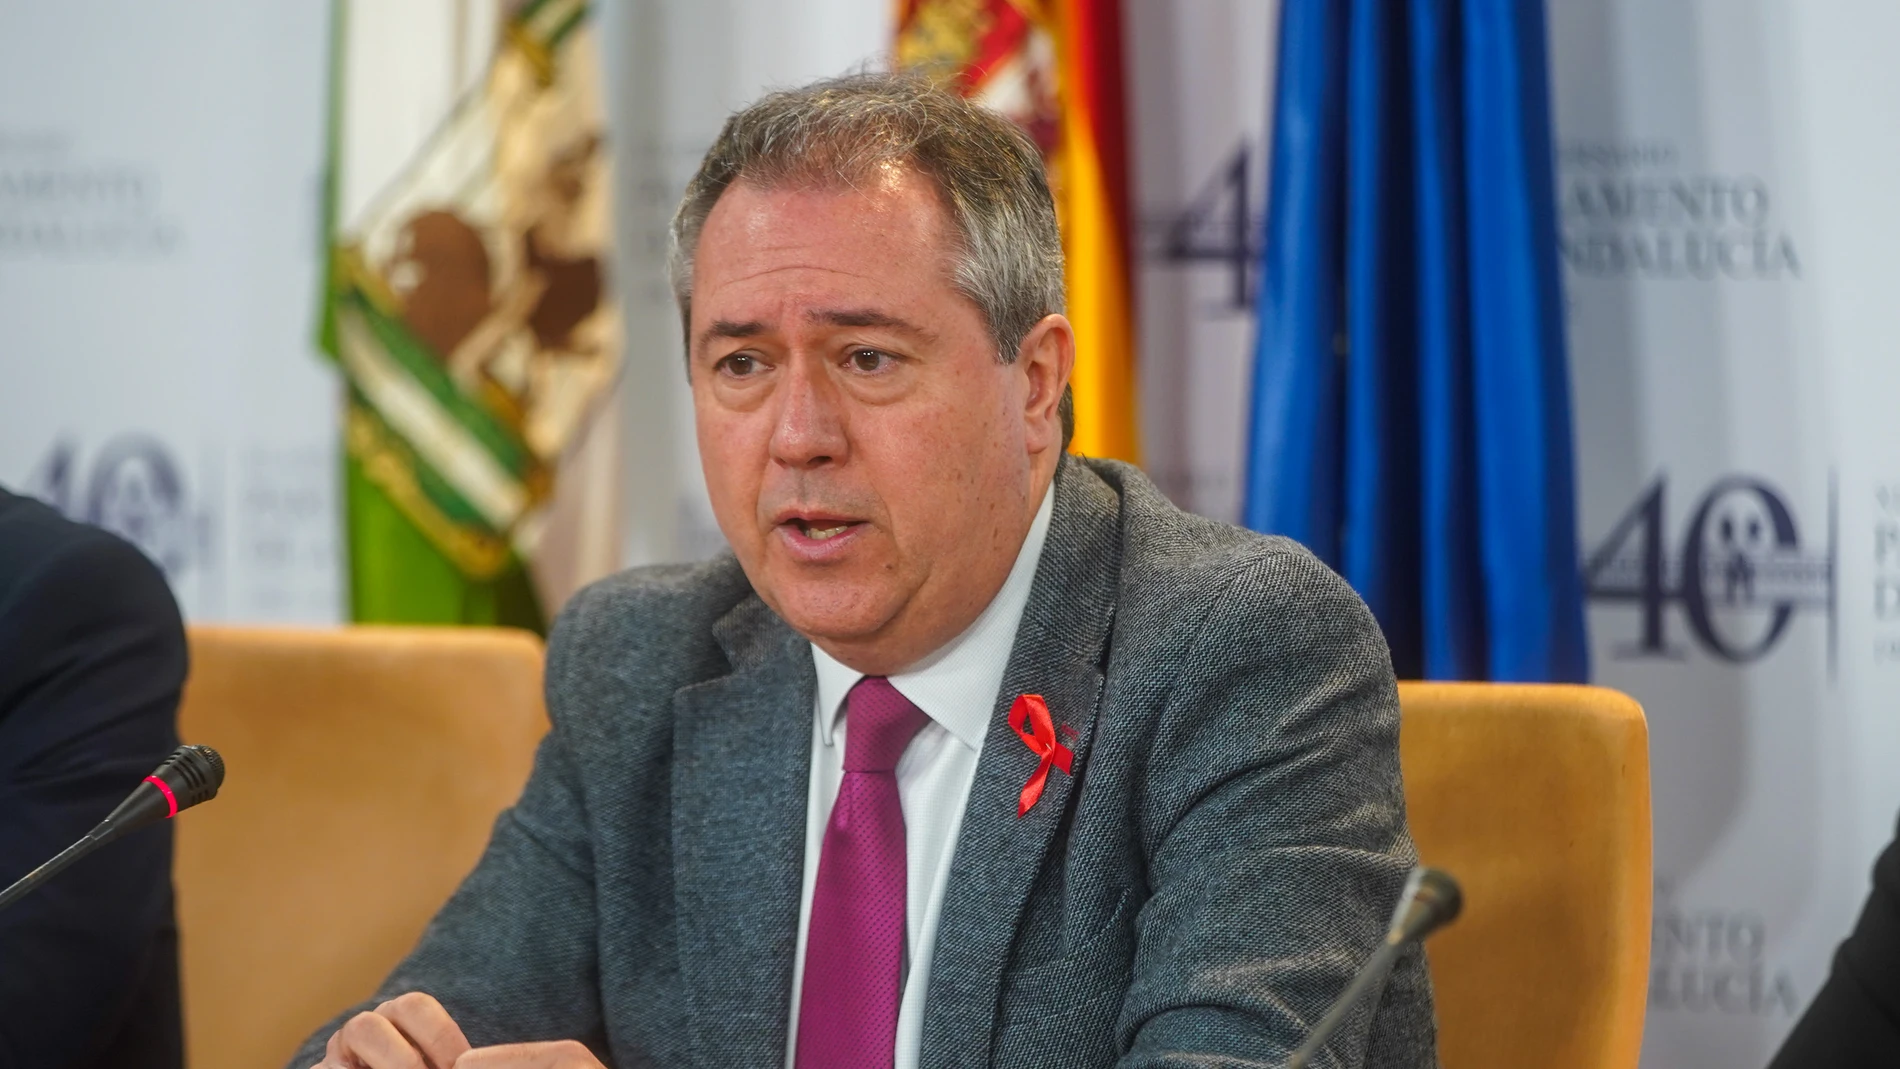 El secretario general del PSOE de Andalucía, Juan Espadas